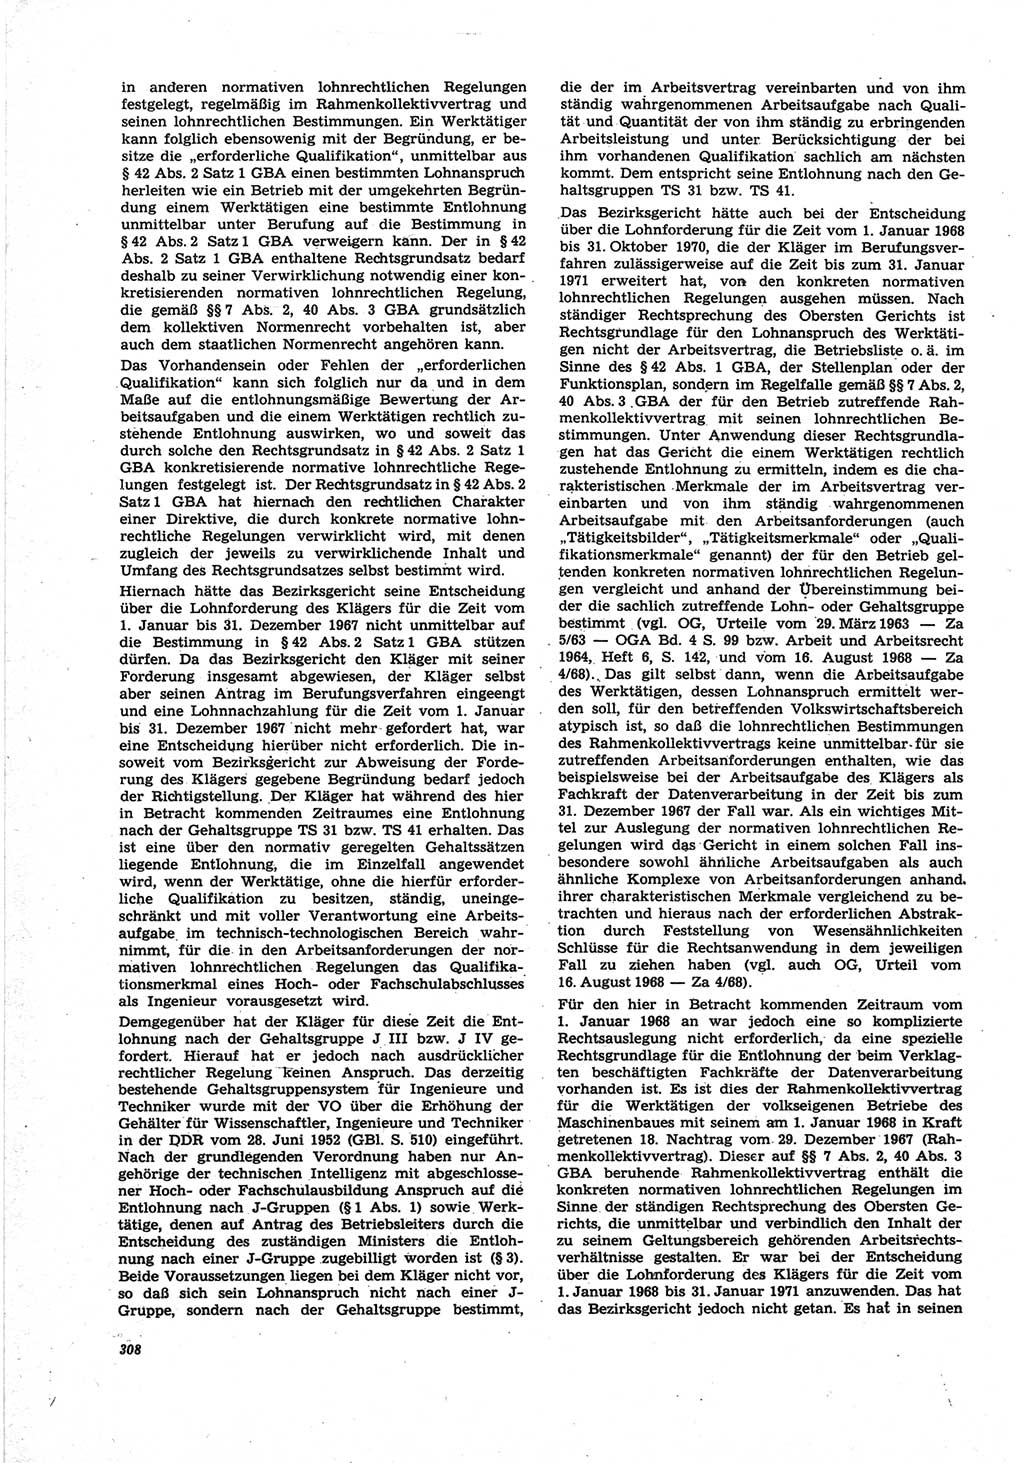 Neue Justiz (NJ), Zeitschrift für Recht und Rechtswissenschaft [Deutsche Demokratische Republik (DDR)], 25. Jahrgang 1971, Seite 308 (NJ DDR 1971, S. 308)